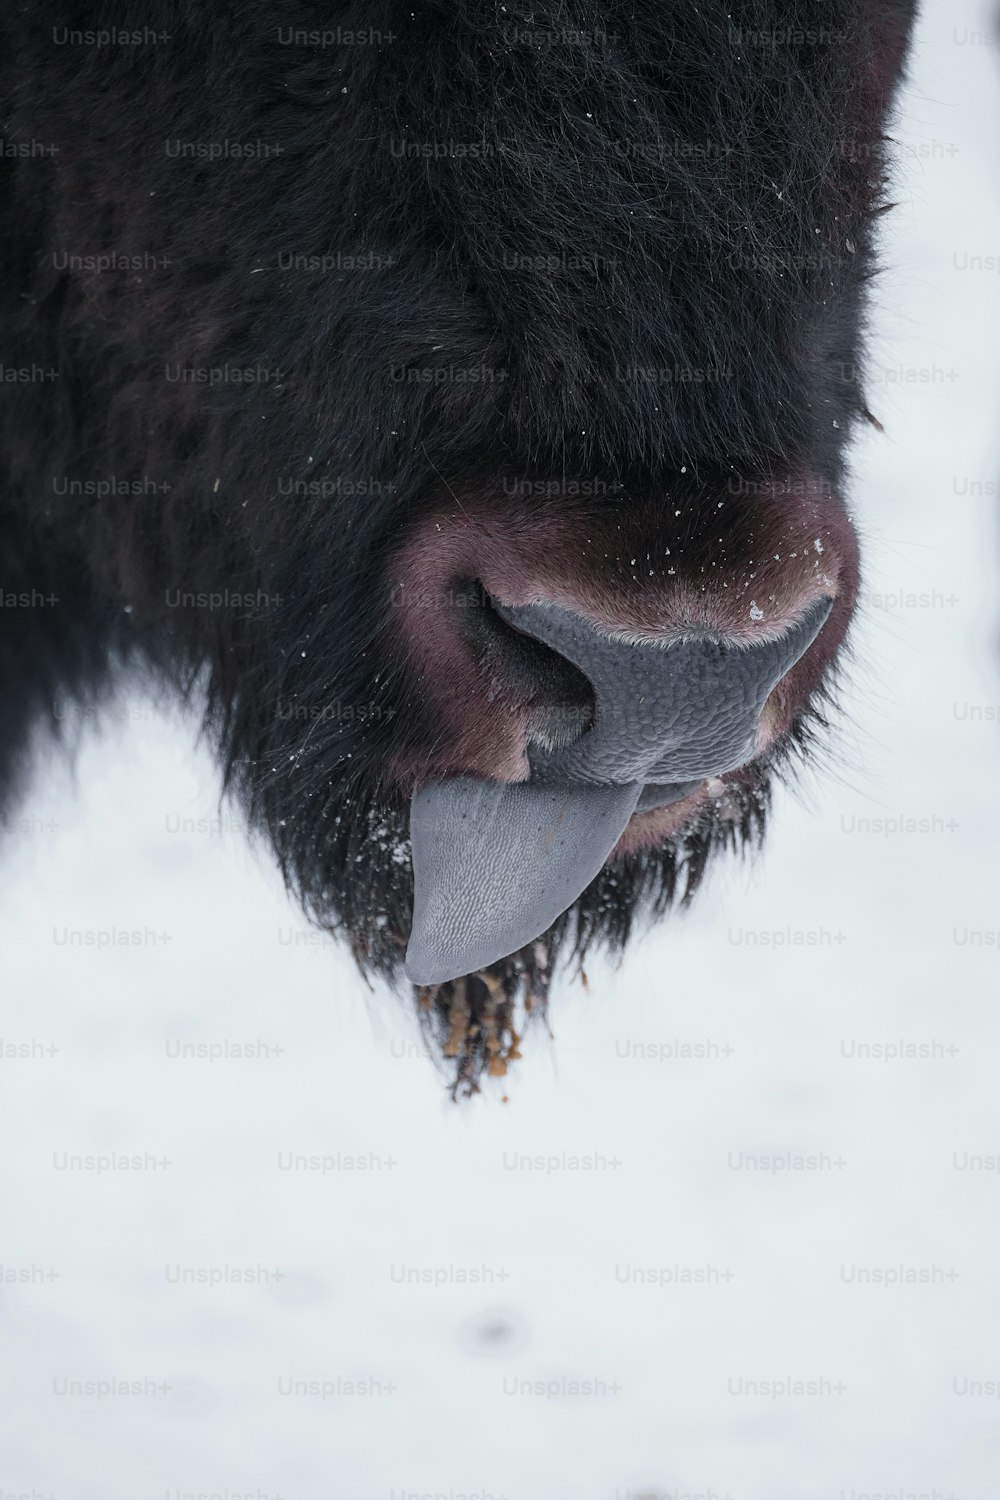 Un primer plano de la nariz de un bisonte en la nieve